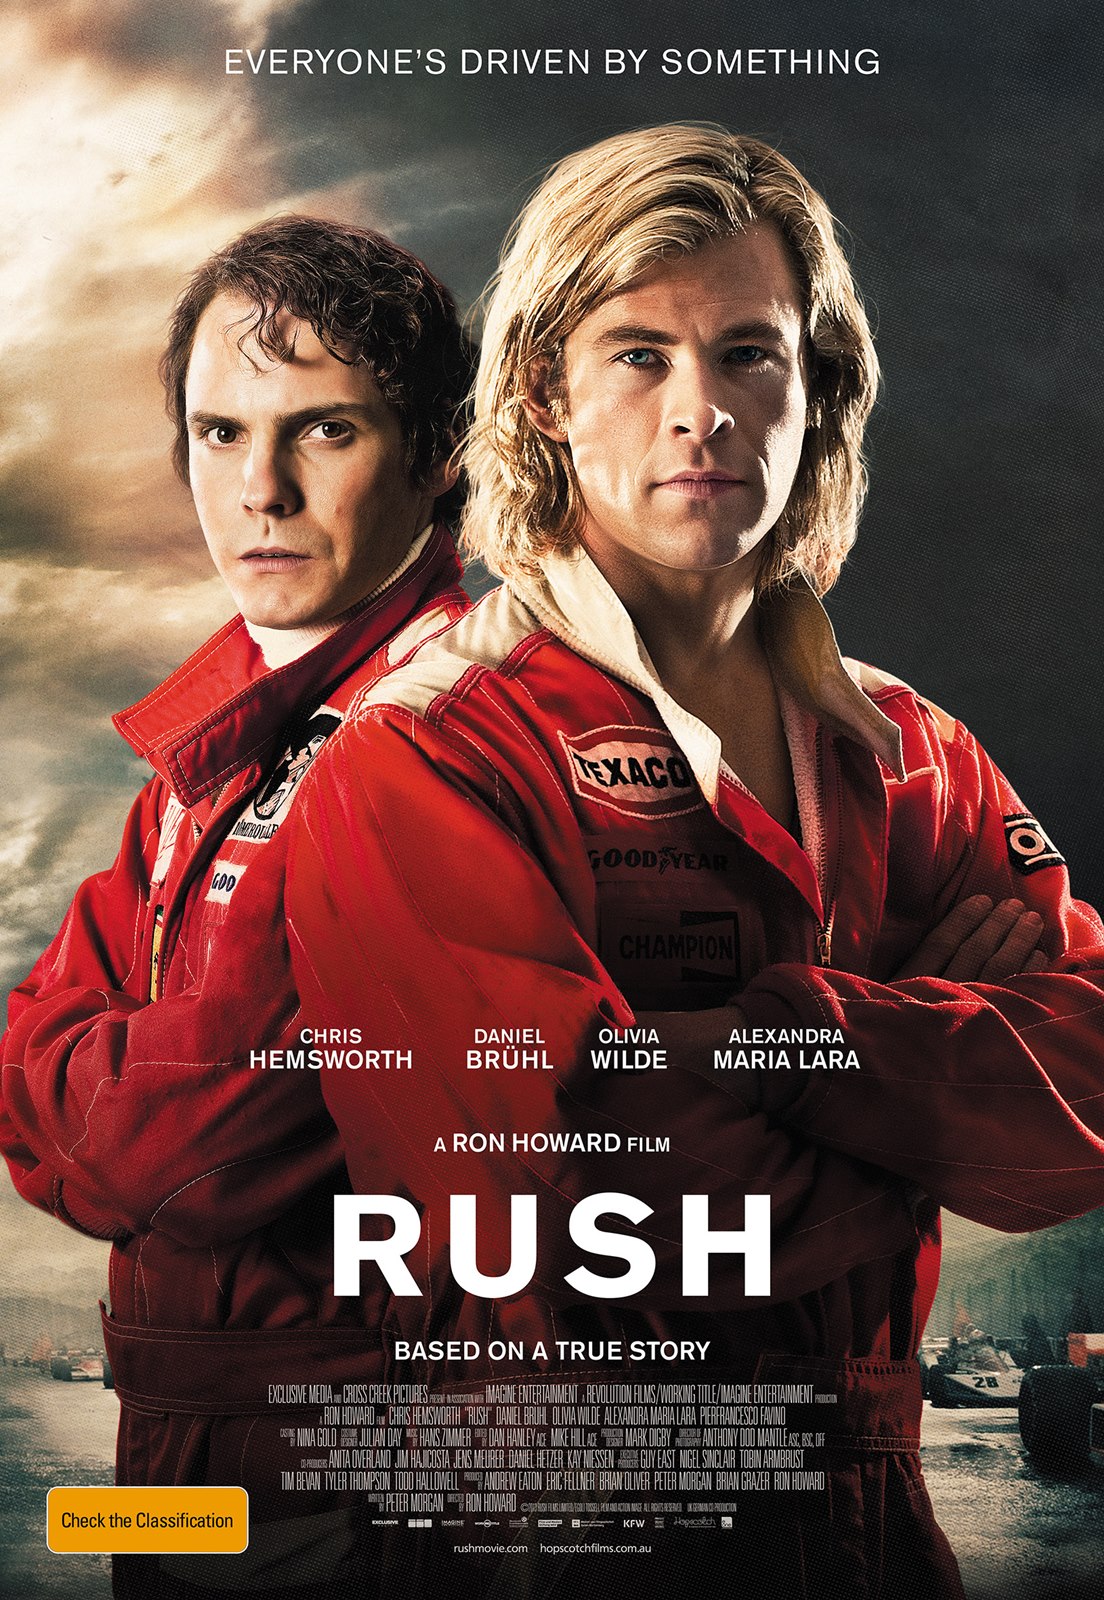 ดูหนังออนไลน์ RUSH 2013 อัดเต็มสปีด เว็บดูหนังใหม่ออนไลน์